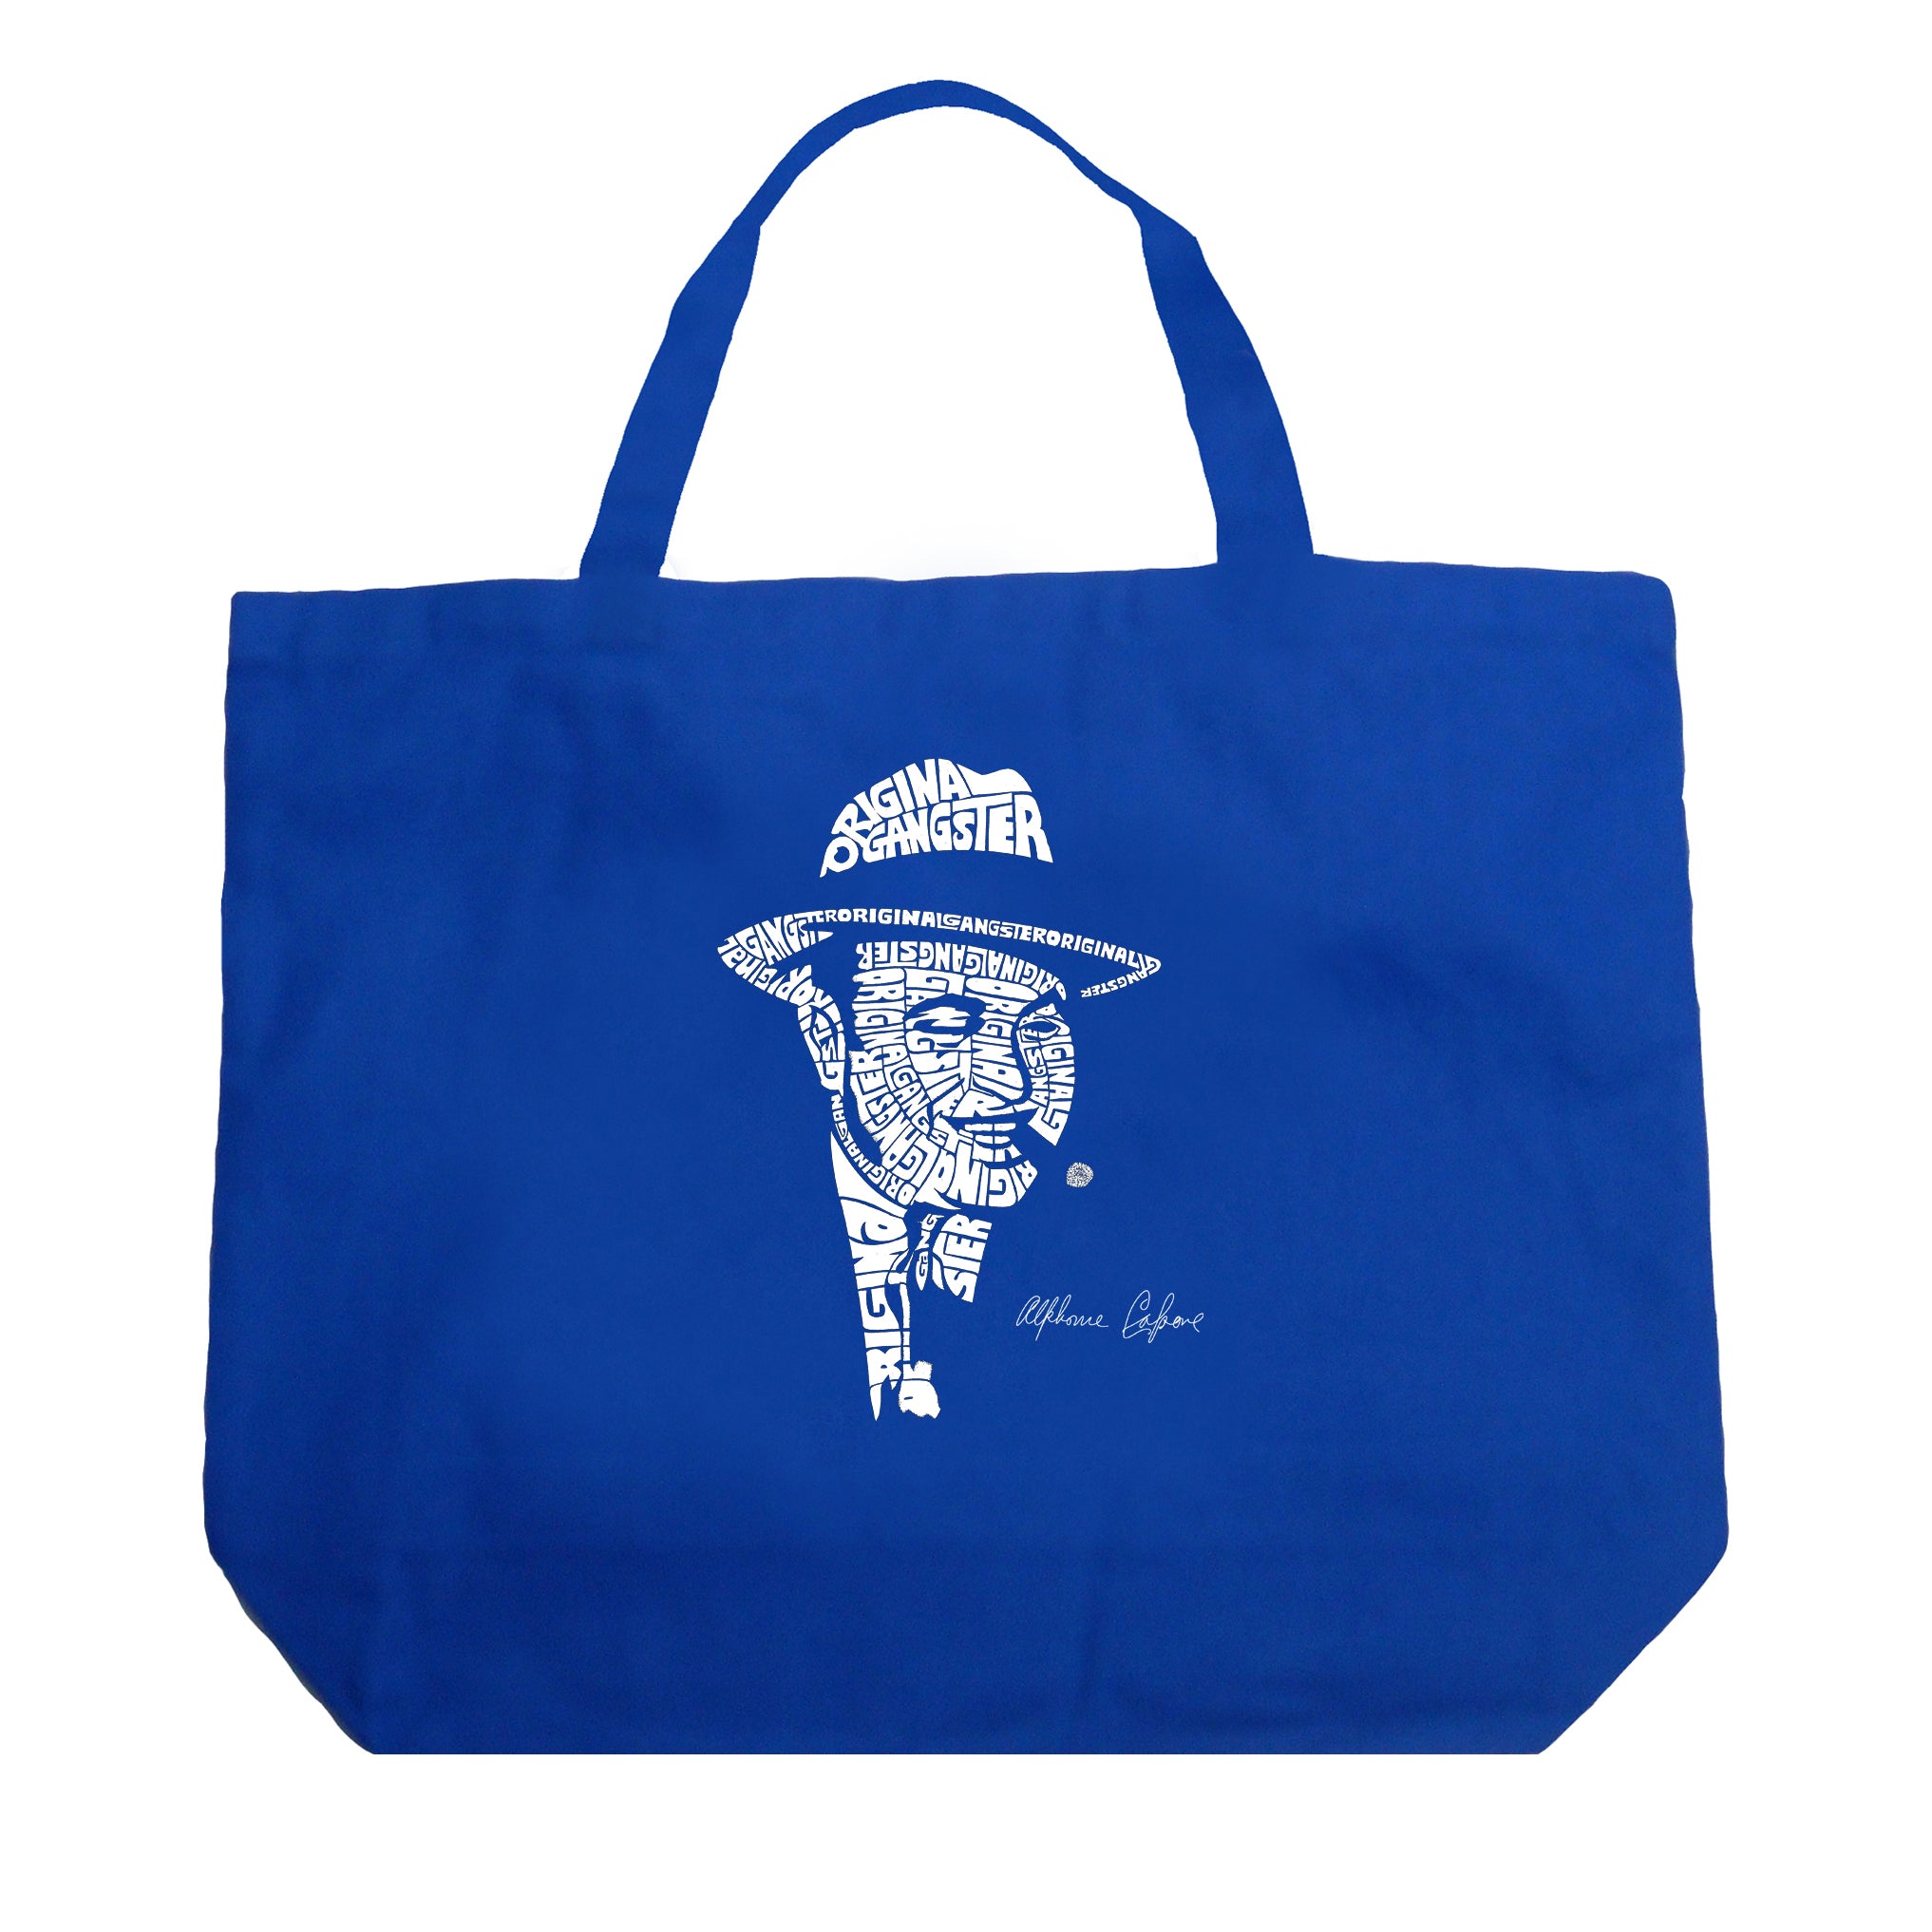 Jean Luc Godard Tote Bag by Atapsi Auliau - Pixels